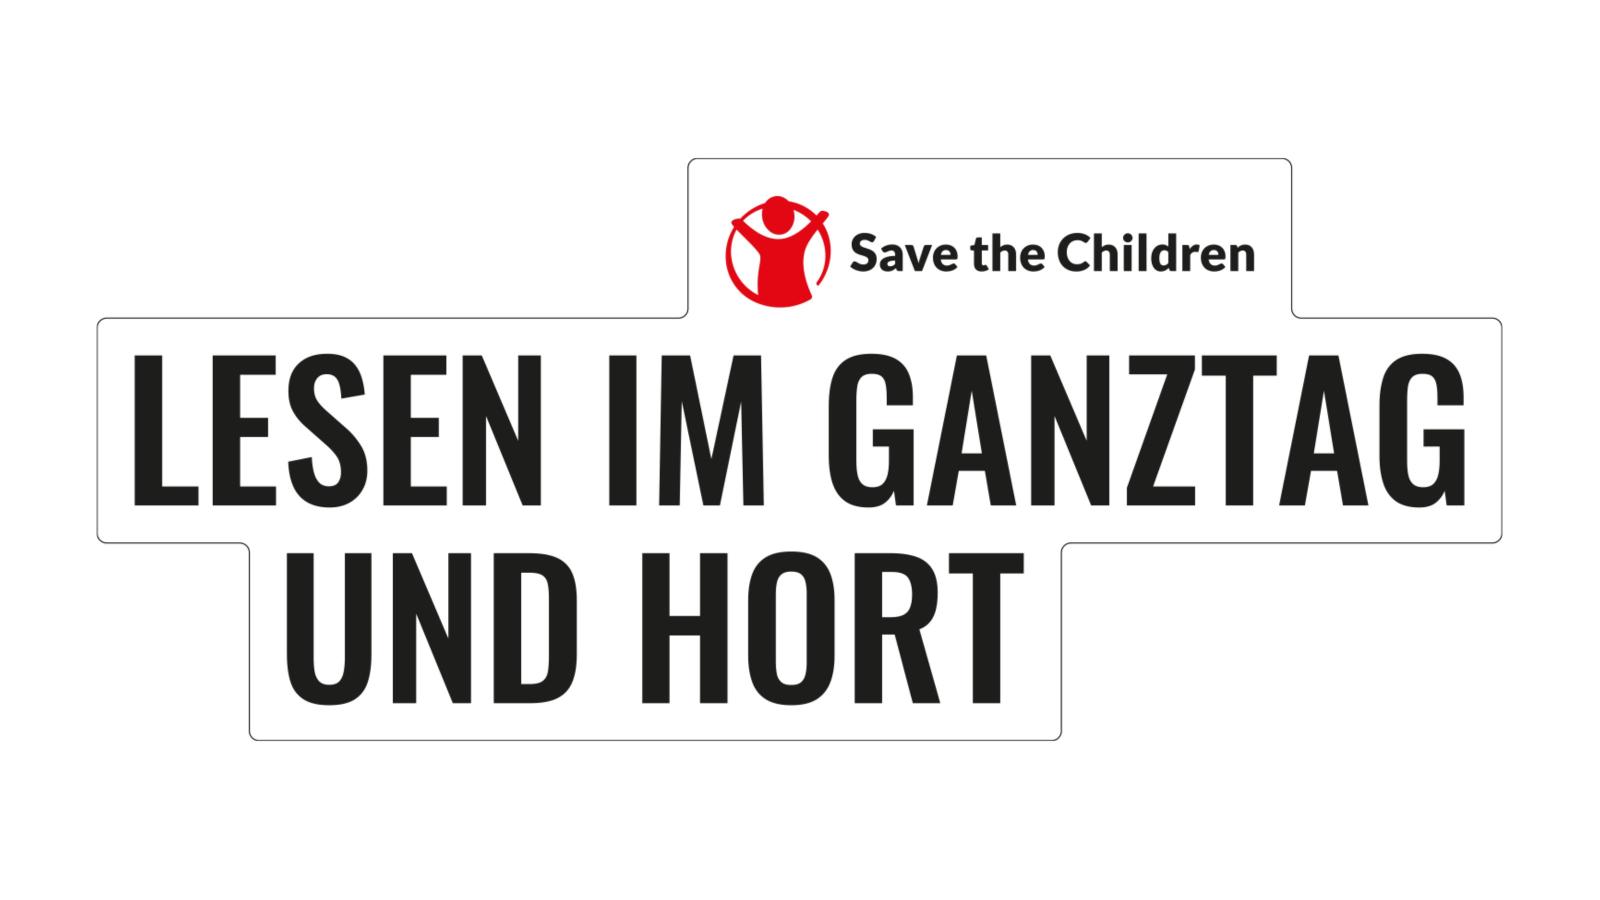 "Lesen im Ganztag und Hort" - Visual für den LeseOasen-Wettbewerb von Save the Children